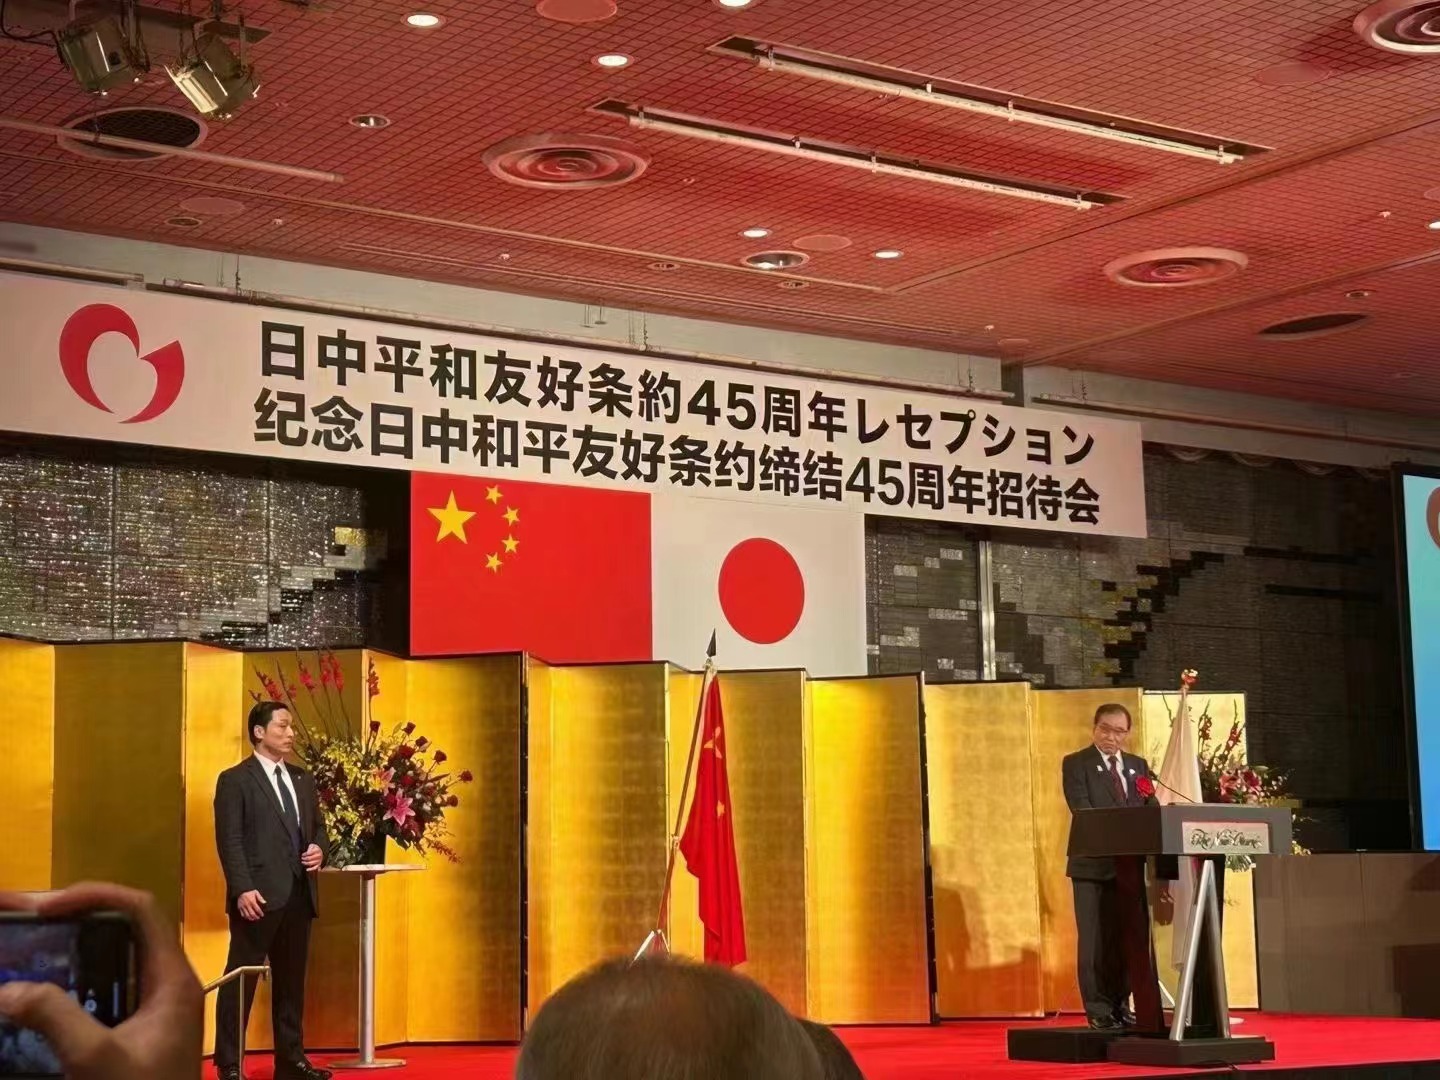 协会出席日本各界联合举办的纪念中日和平友好条约缔结45周年大型招待会